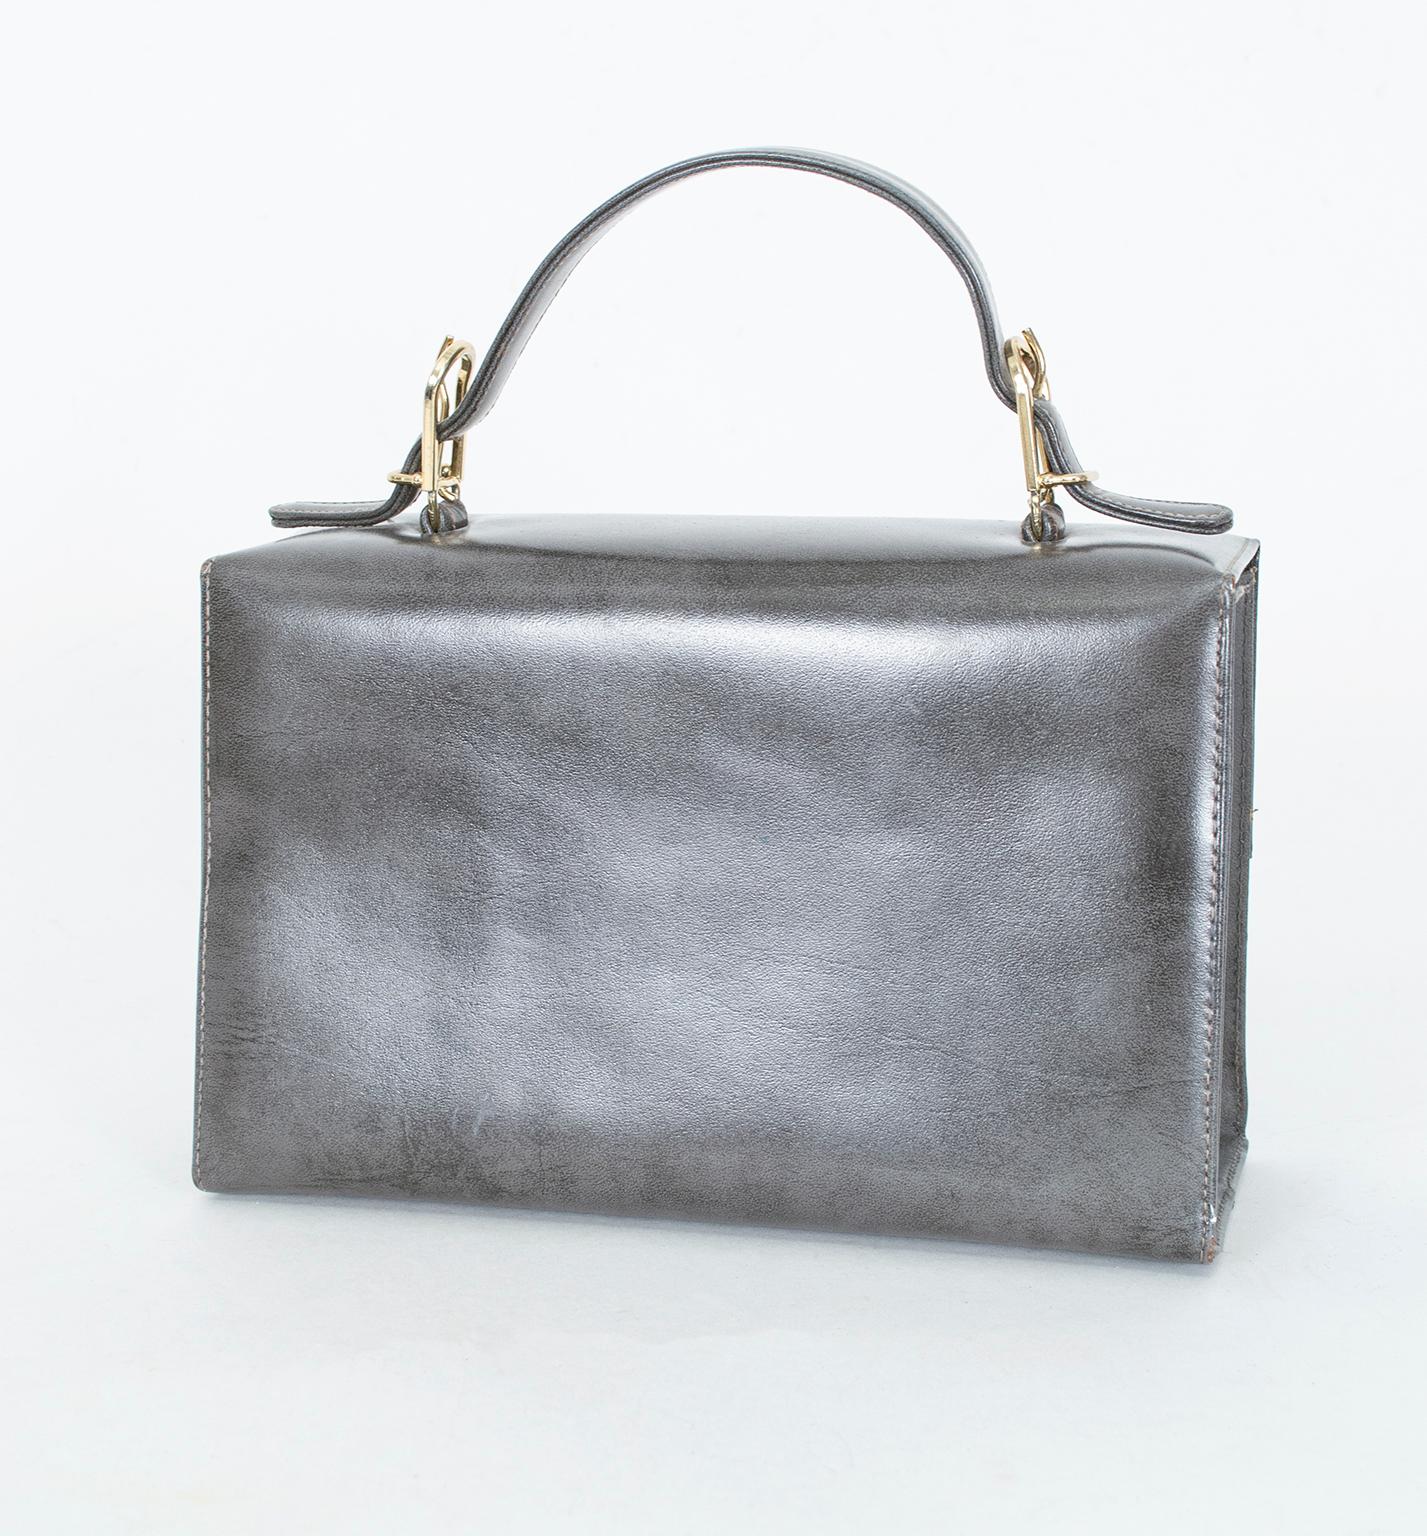 Eine strukturierte, damenhafte Handtasche für ALLE fünfzig Grautöne. Diese Handtasche kombiniert Glanz und Geometrie mit Praktikabilität. Dieses Mittelgrau ist eine extrem schwer zu findende Farbe für Handtaschen. Es ist ein weicher, neutraler